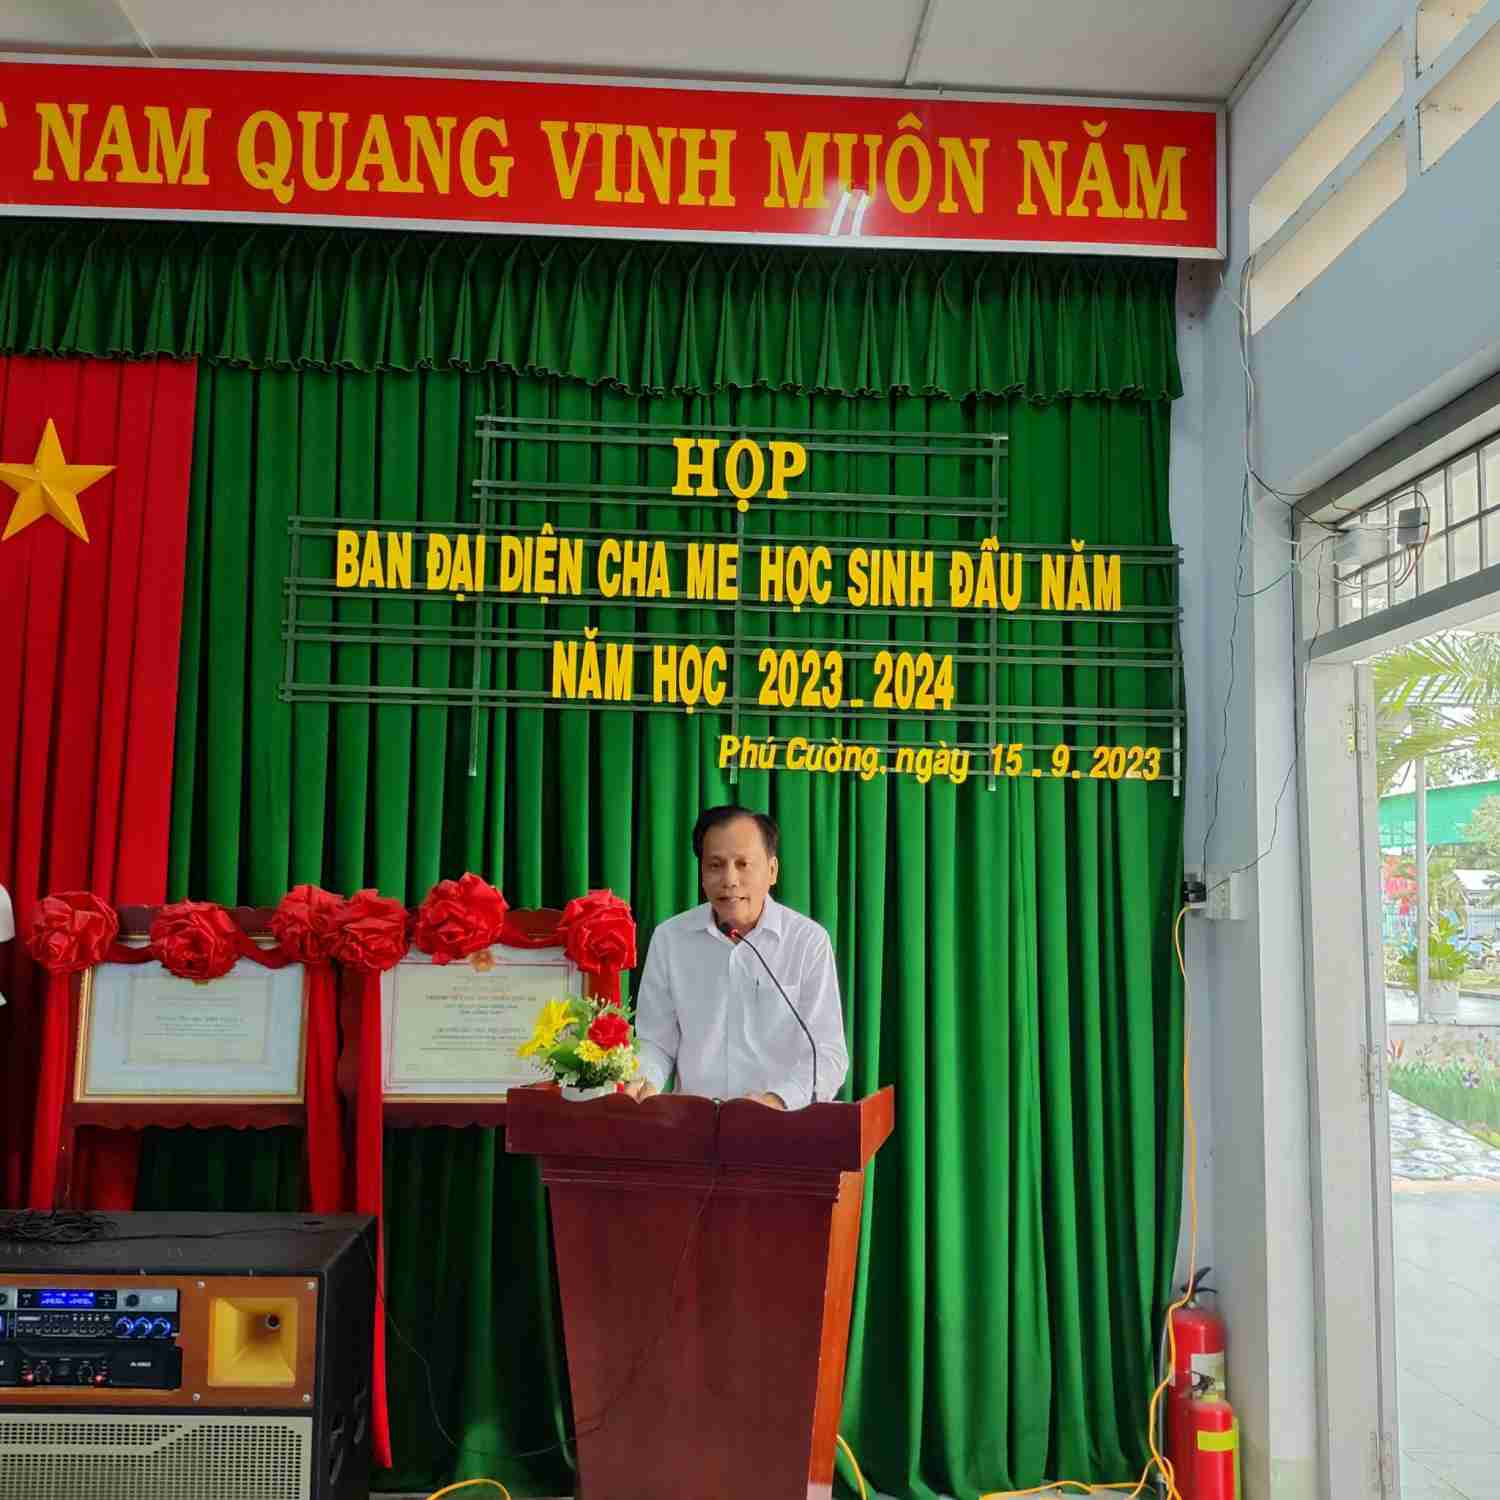 Thầy Nguyễn Văn Kết – Hiệu trưởng nhà trường chia sẻ tại cuộc họp